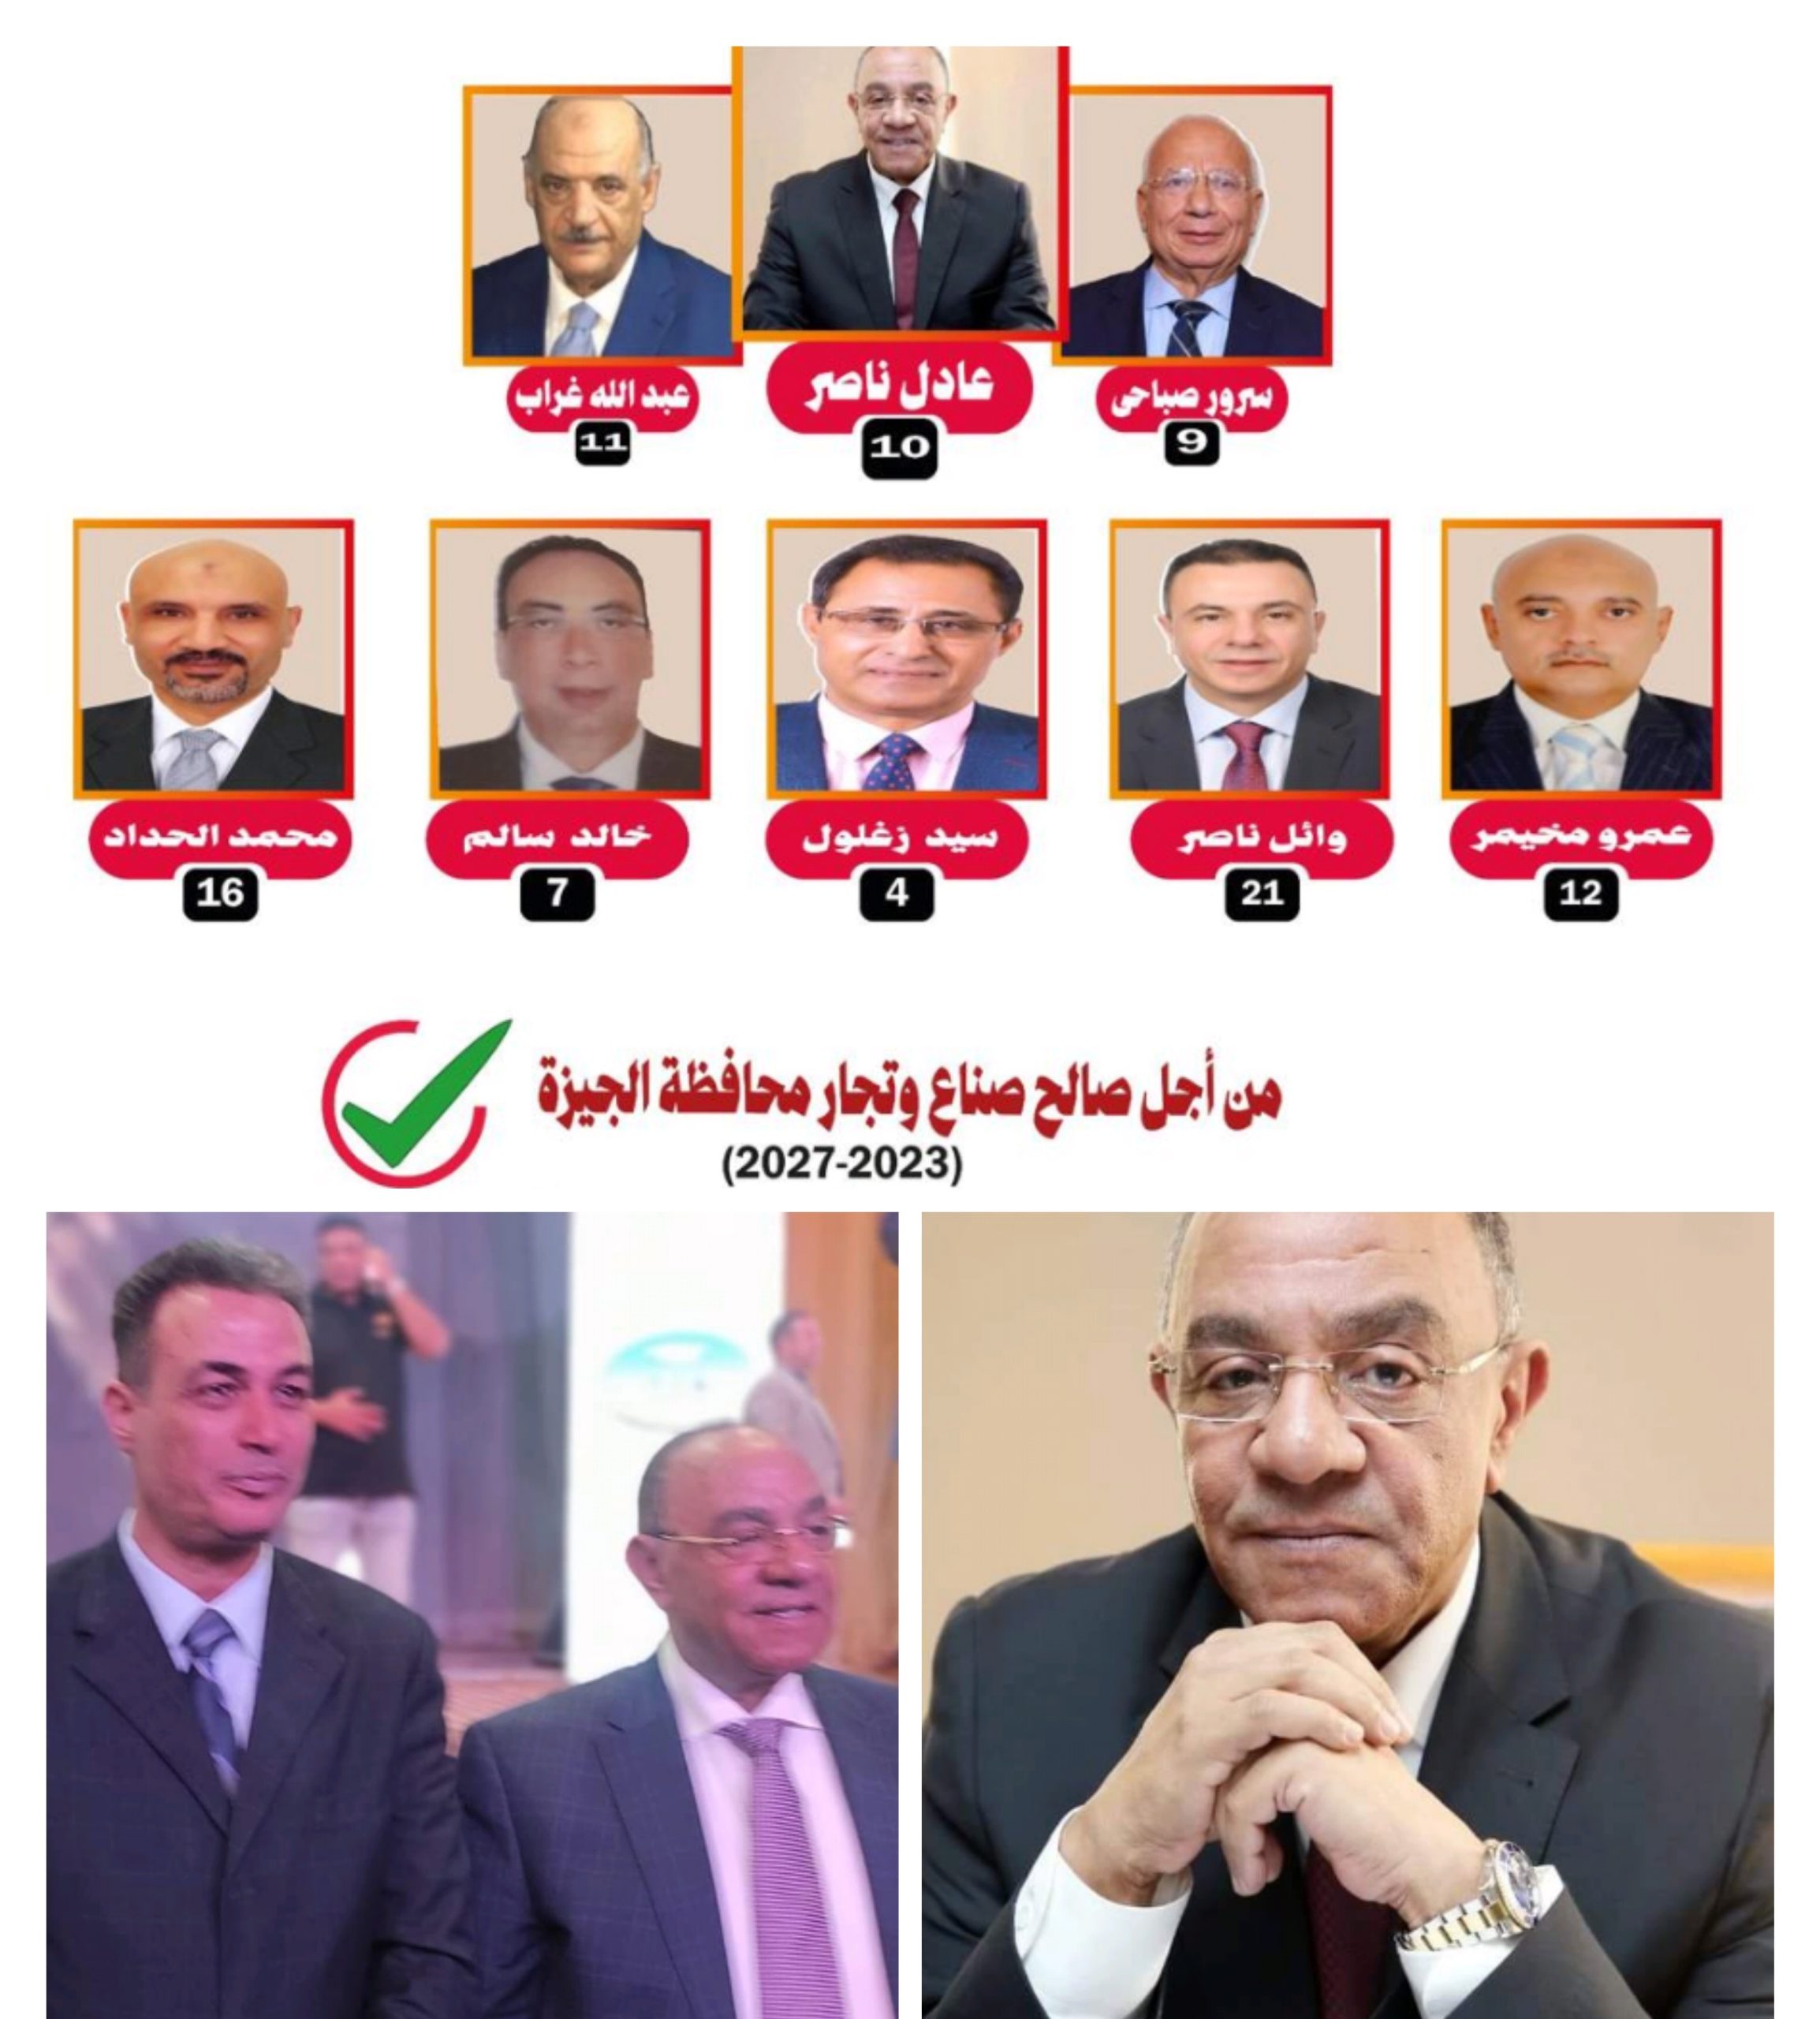 المستشار علاء المكاوي يؤيد النائب عادل ناصر لرئاسة الغرفة التجارية بالجيزة وقائمة 